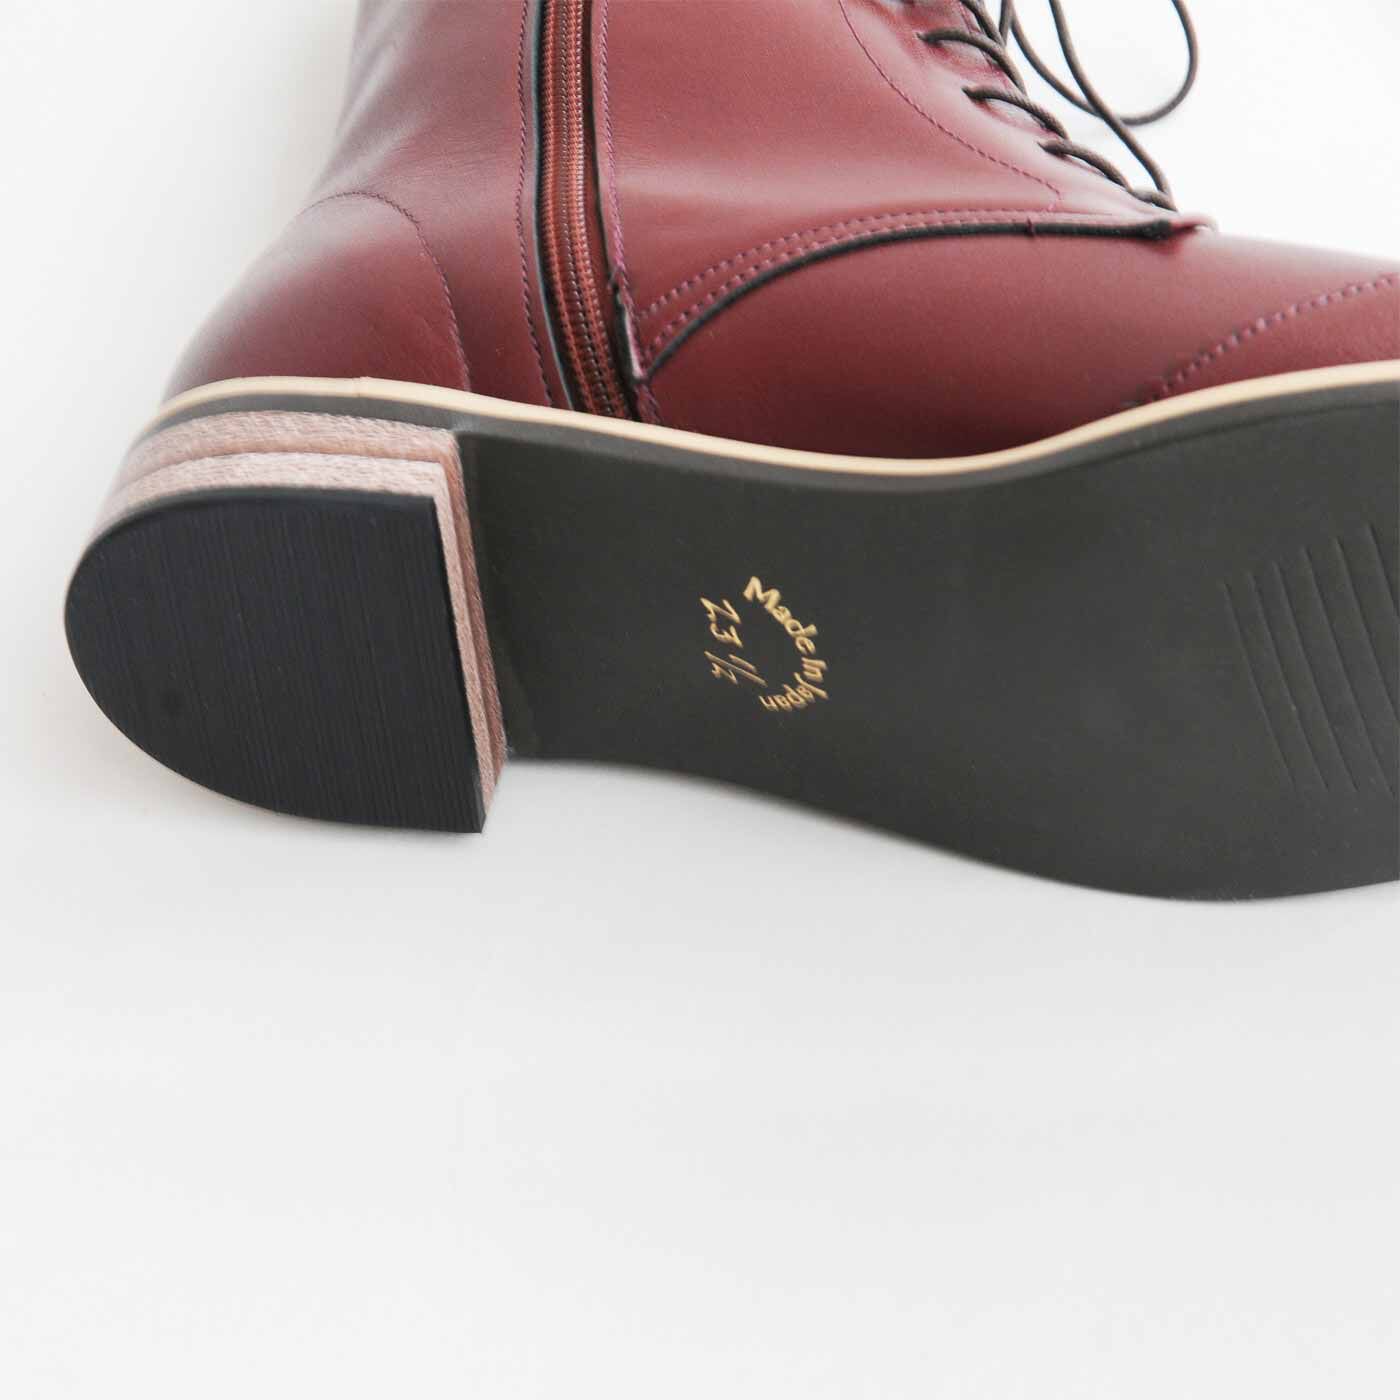 ＆Stories|長田靴職人が叶えた 理想の本革ウィングチップブーツ〈レッドブラウン〉[本革 ブーツ：日本製]|かかとは歩きやすい2.5cm。